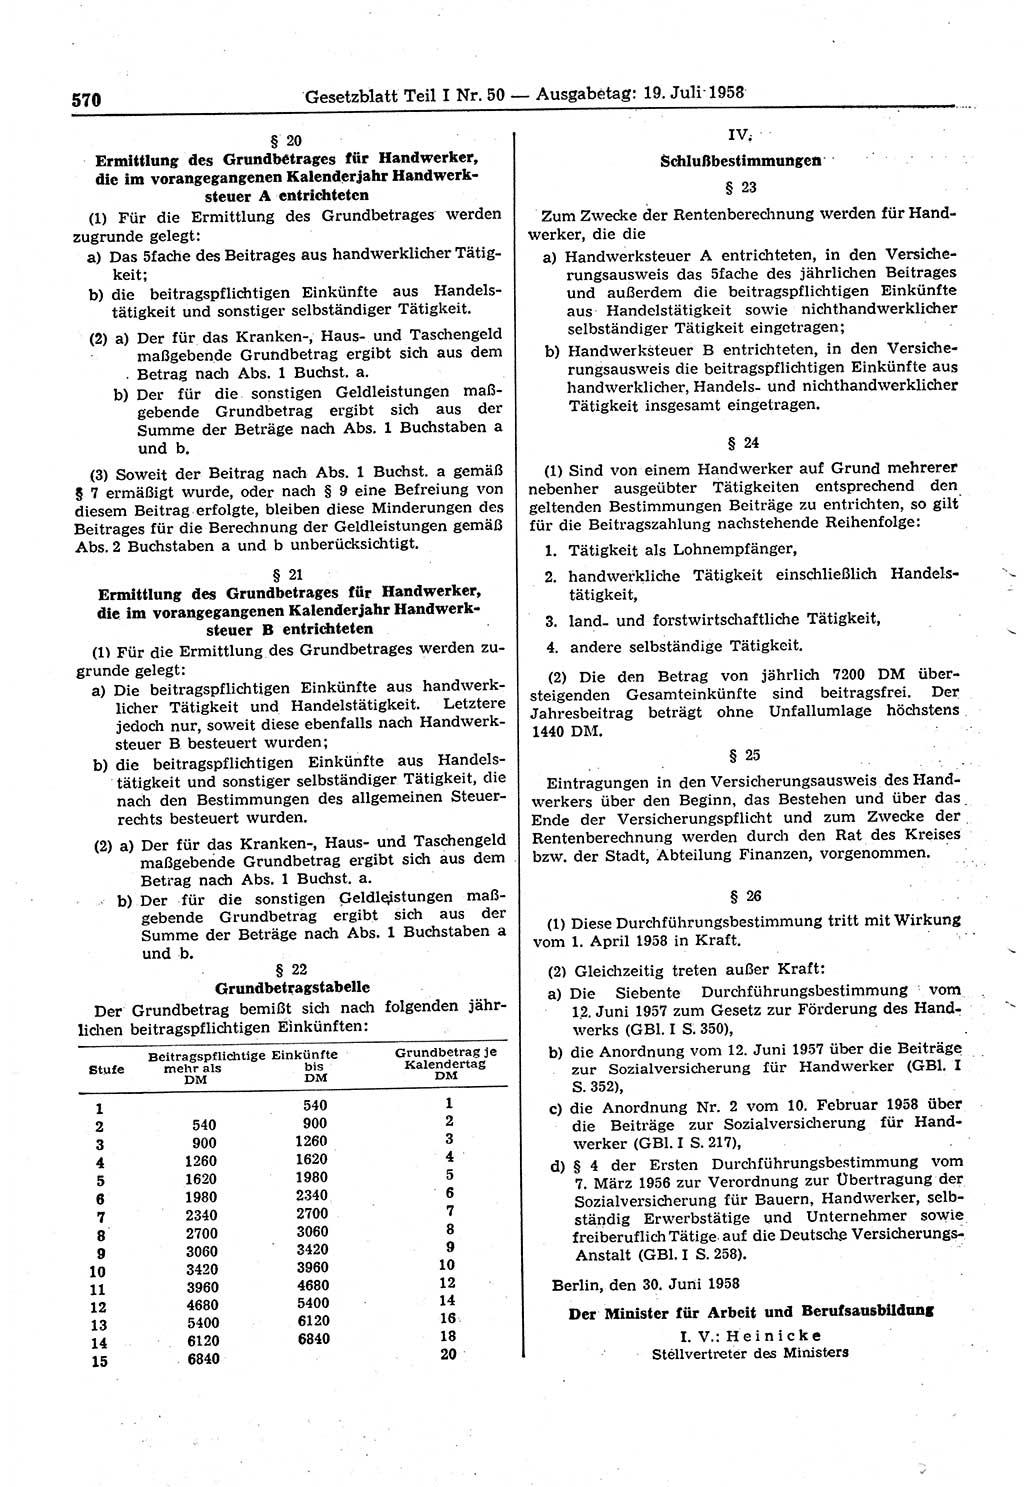 Gesetzblatt (GBl.) der Deutschen Demokratischen Republik (DDR) Teil Ⅰ 1958, Seite 570 (GBl. DDR Ⅰ 1958, S. 570)